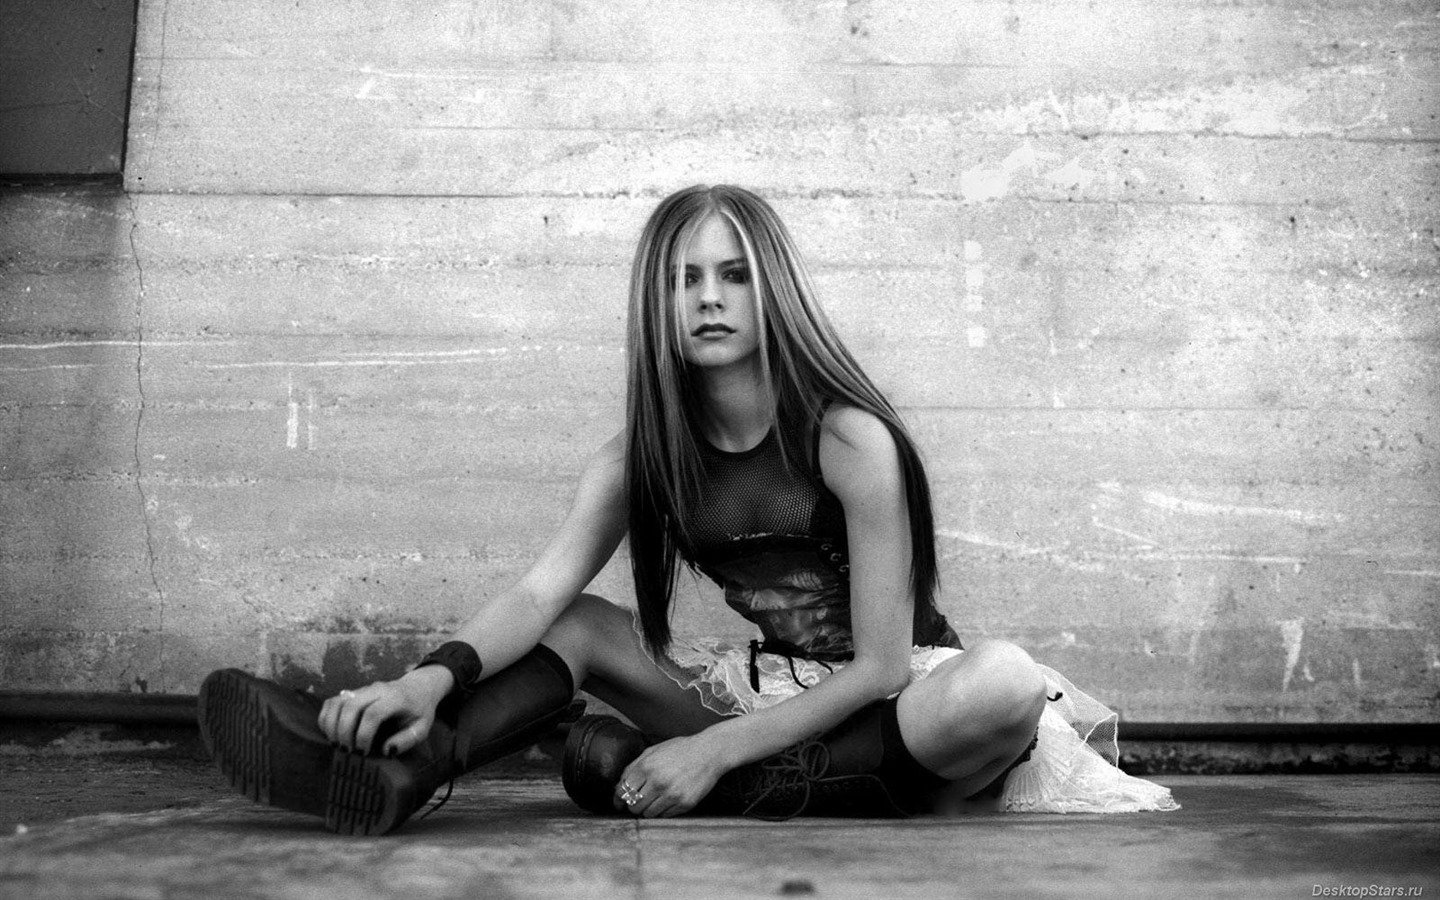 Avril Lavigne 艾薇儿·拉维妮 美女壁纸(三)7 - 1440x900